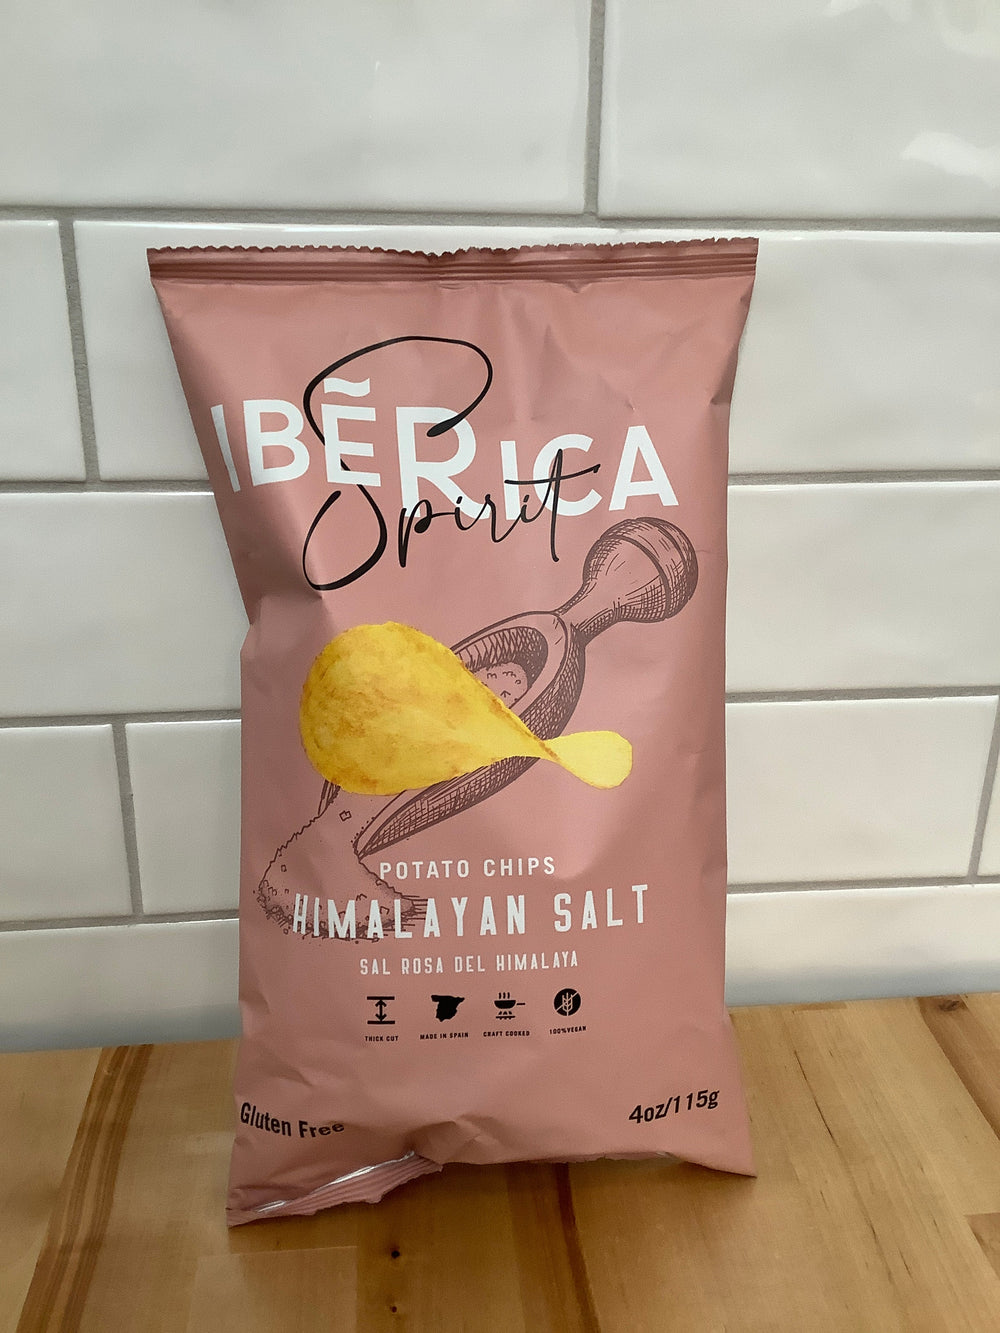 IBERICA SPIRIT Himalayan Salt Potato Chips 50